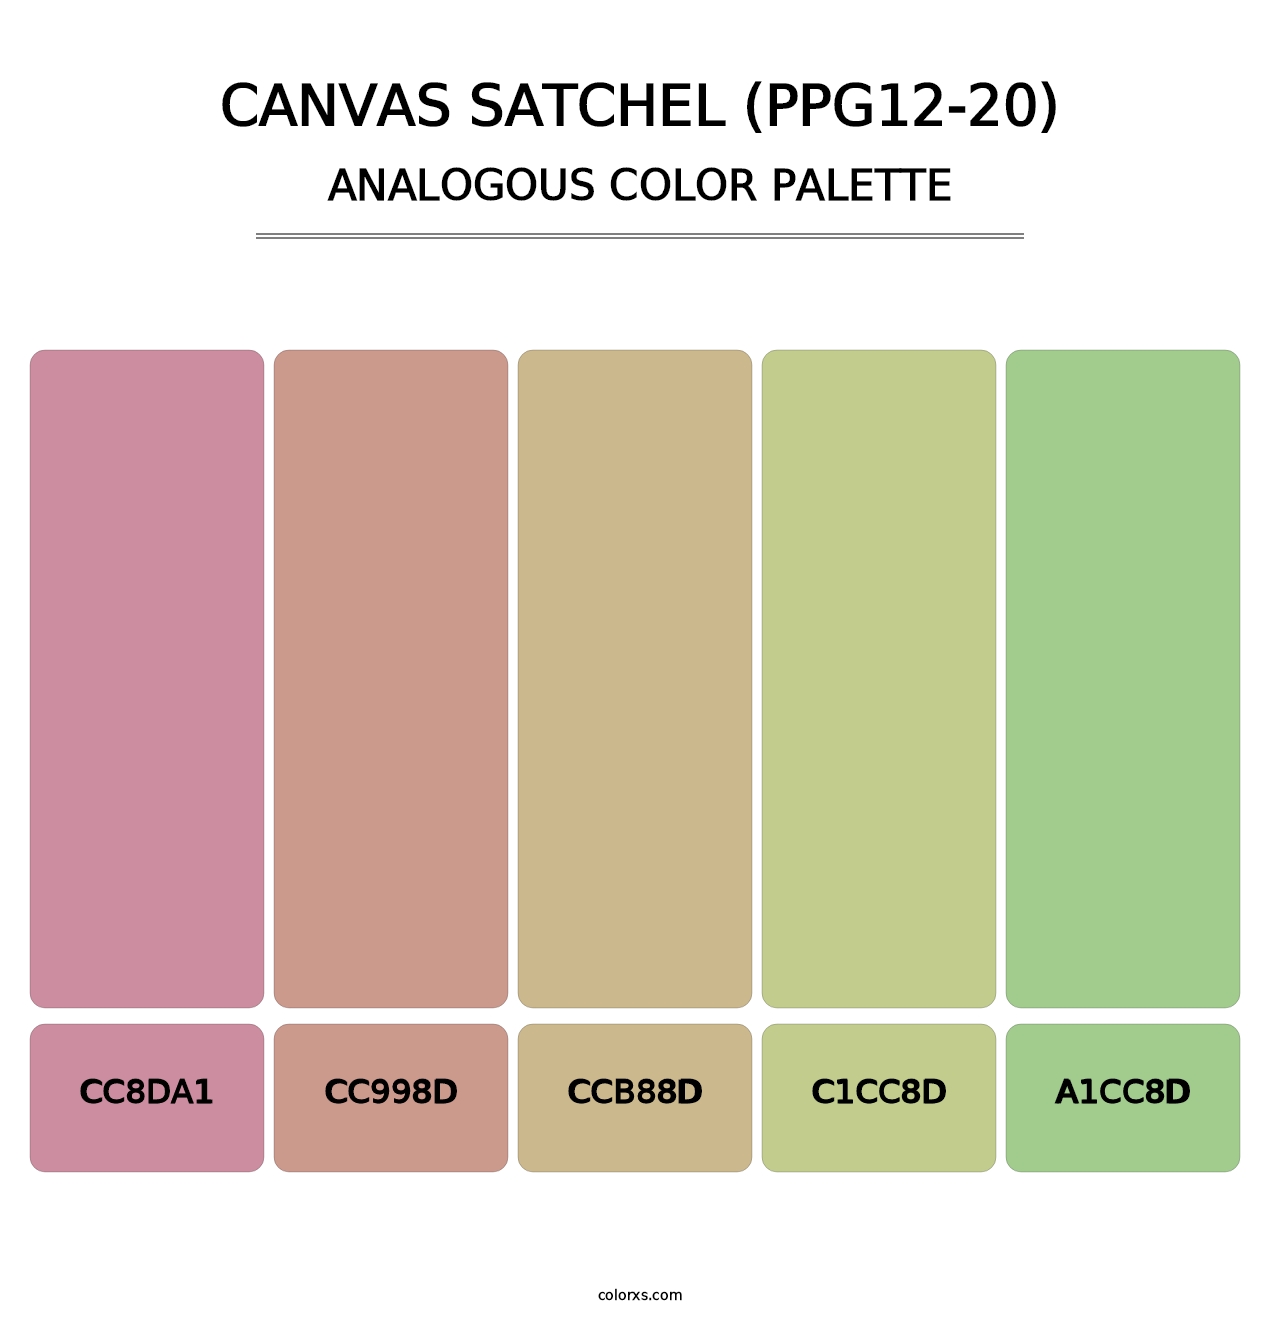 Canvas Satchel (PPG12-20) - Analogous Color Palette